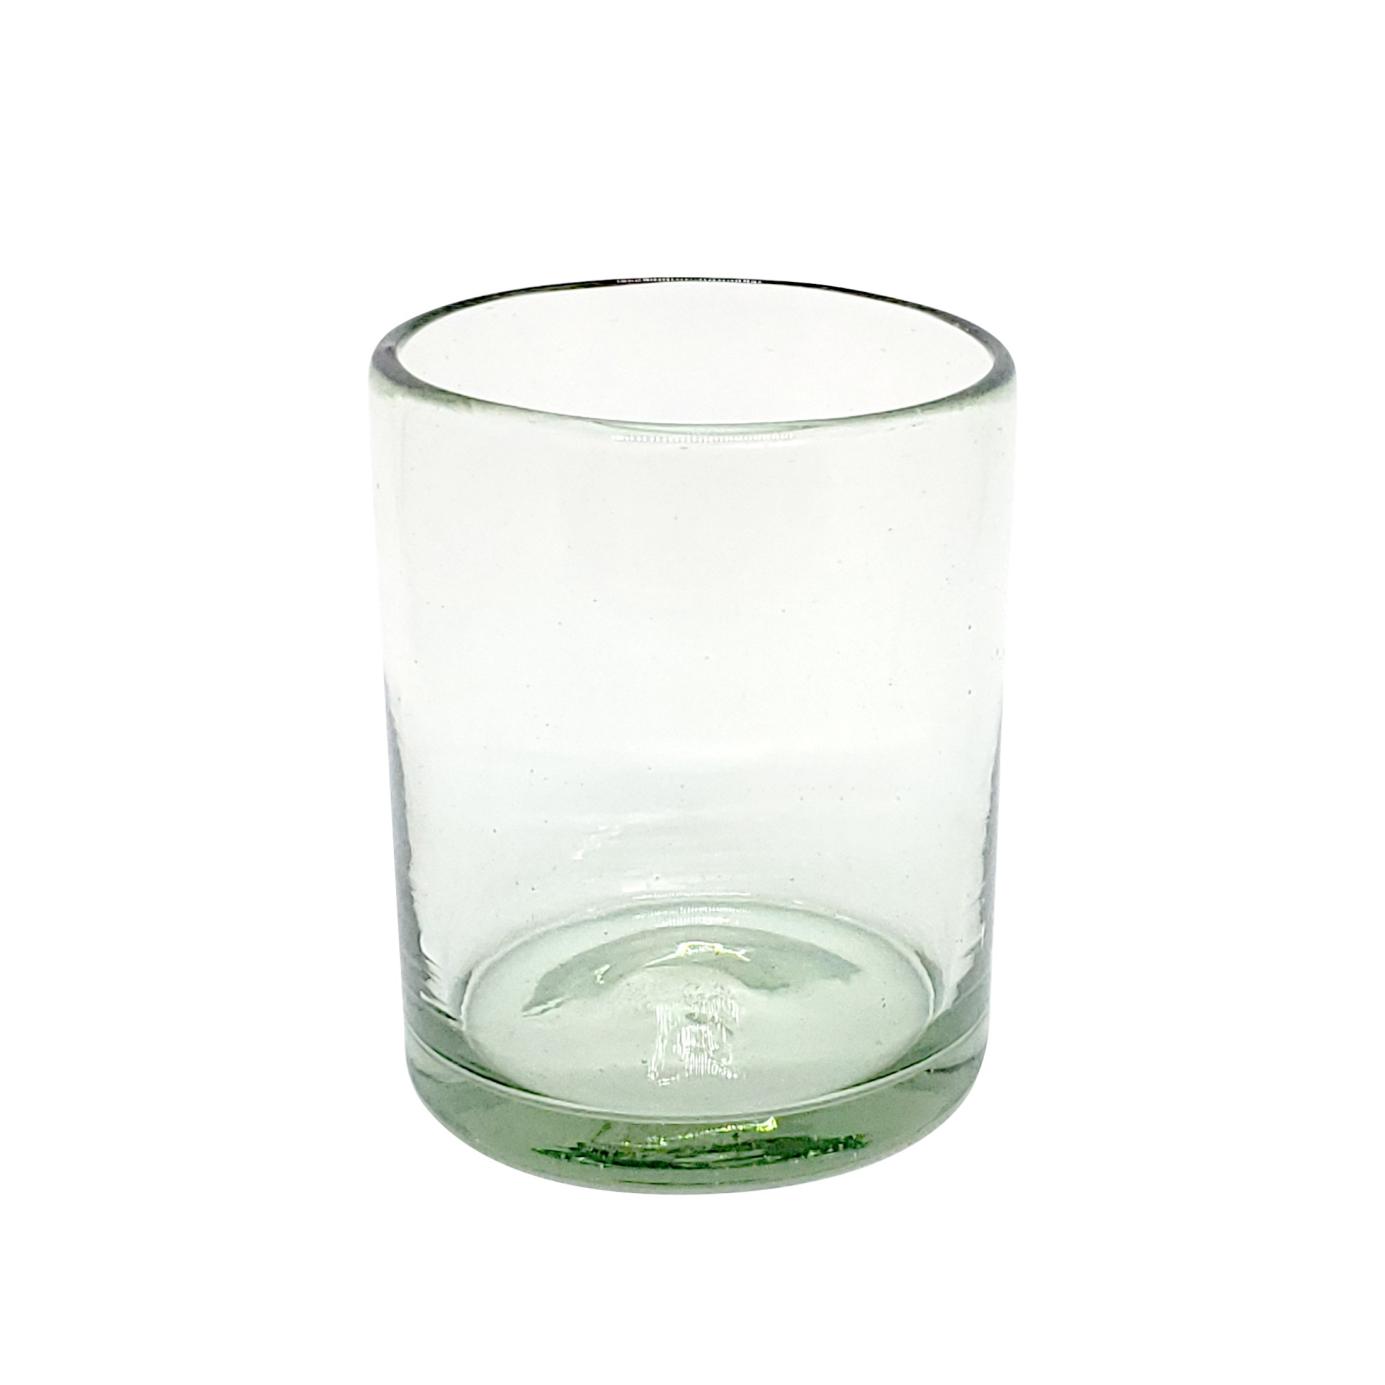 Ofertas / Juego de 6 vasos chicos transparentes / Para una apariencia más tradicional, éstos vasos de vidrio soplado son creados de manera 100% artesanal.